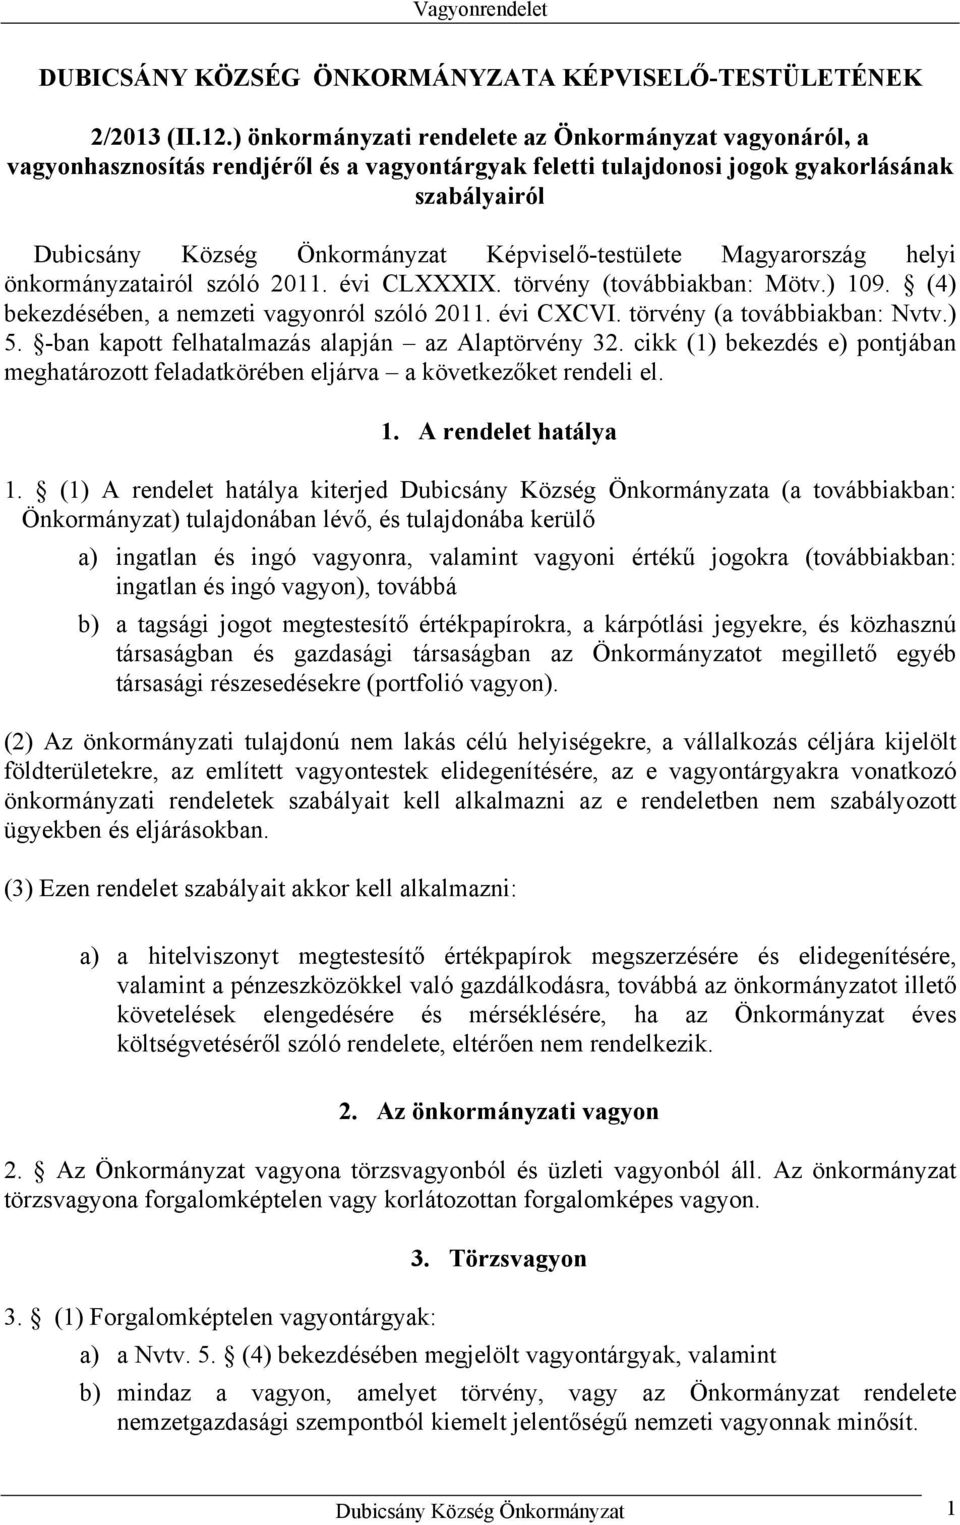 Képviselő-testülete Magyarország helyi önkormányzatairól szóló 2011. évi CLXXXIX. törvény (továbbiakban: Mötv.) 109. (4) bekezdésében, a nemzeti vagyonról szóló 2011. évi CXCVI.